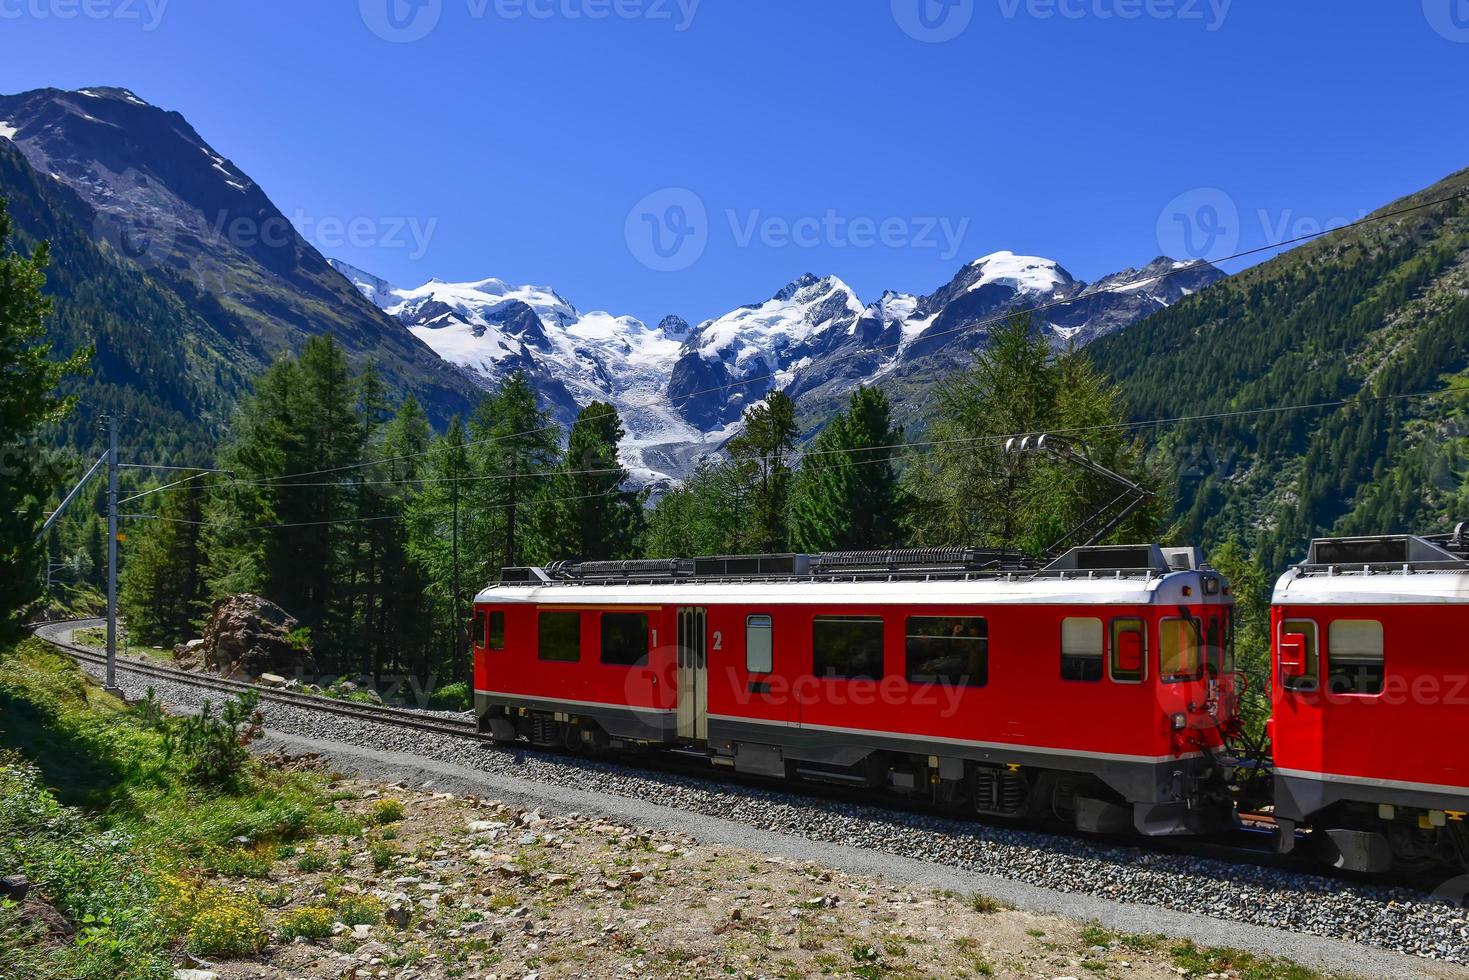 schweiziska bergståg bernina express korsade alperna foto